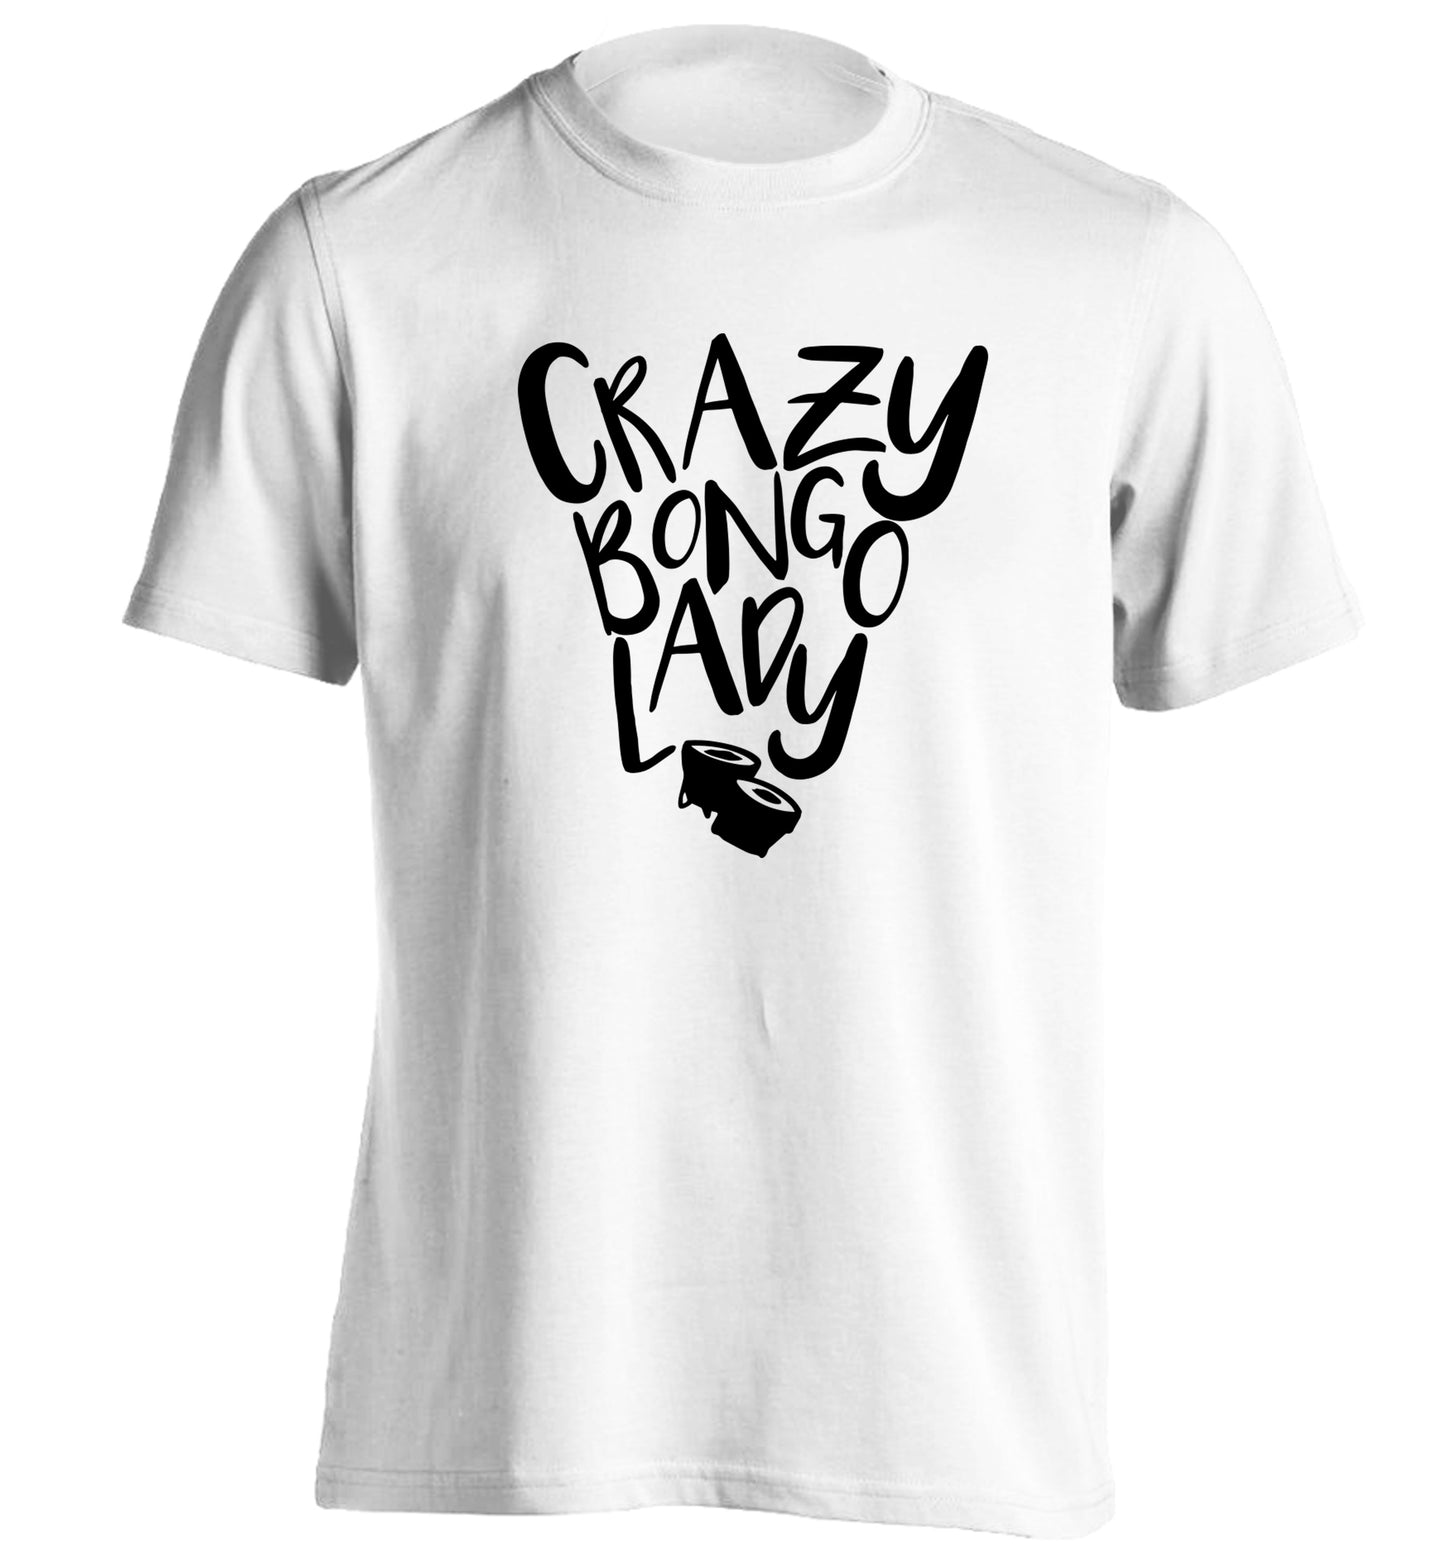 Crazy bongo lady adults unisex white Tshirt 2XL